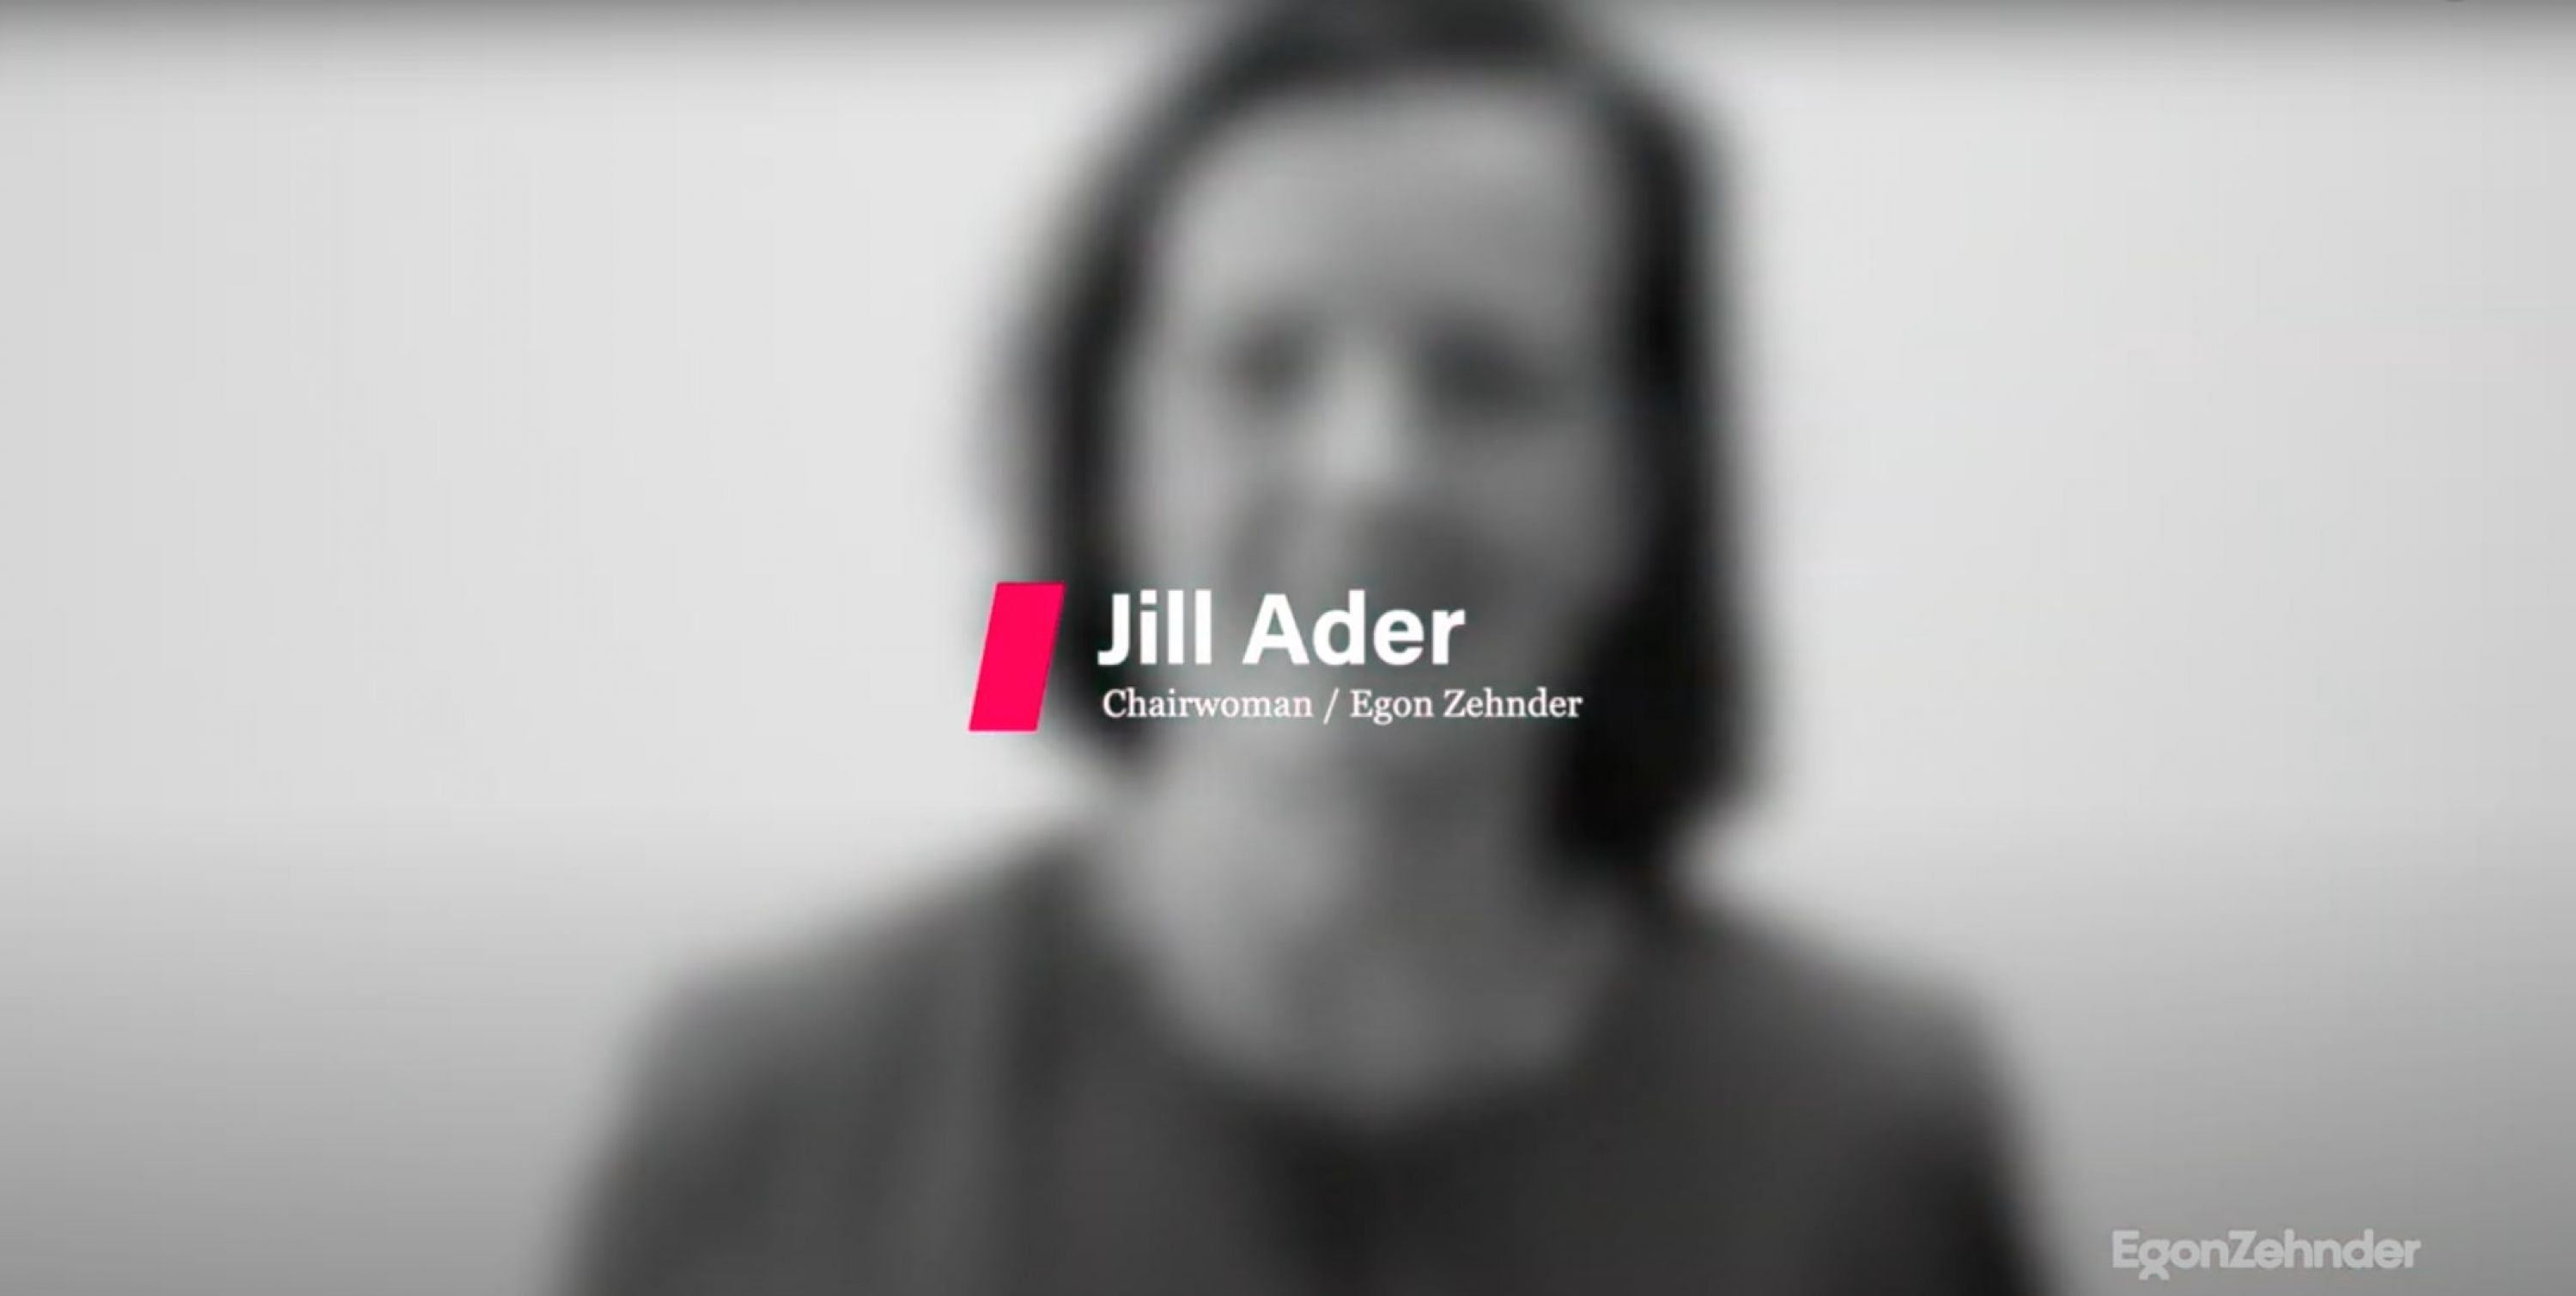 吉尔·阿德（Jill Ader），主席，埃贡·Zehnder（Egon Zehnder）